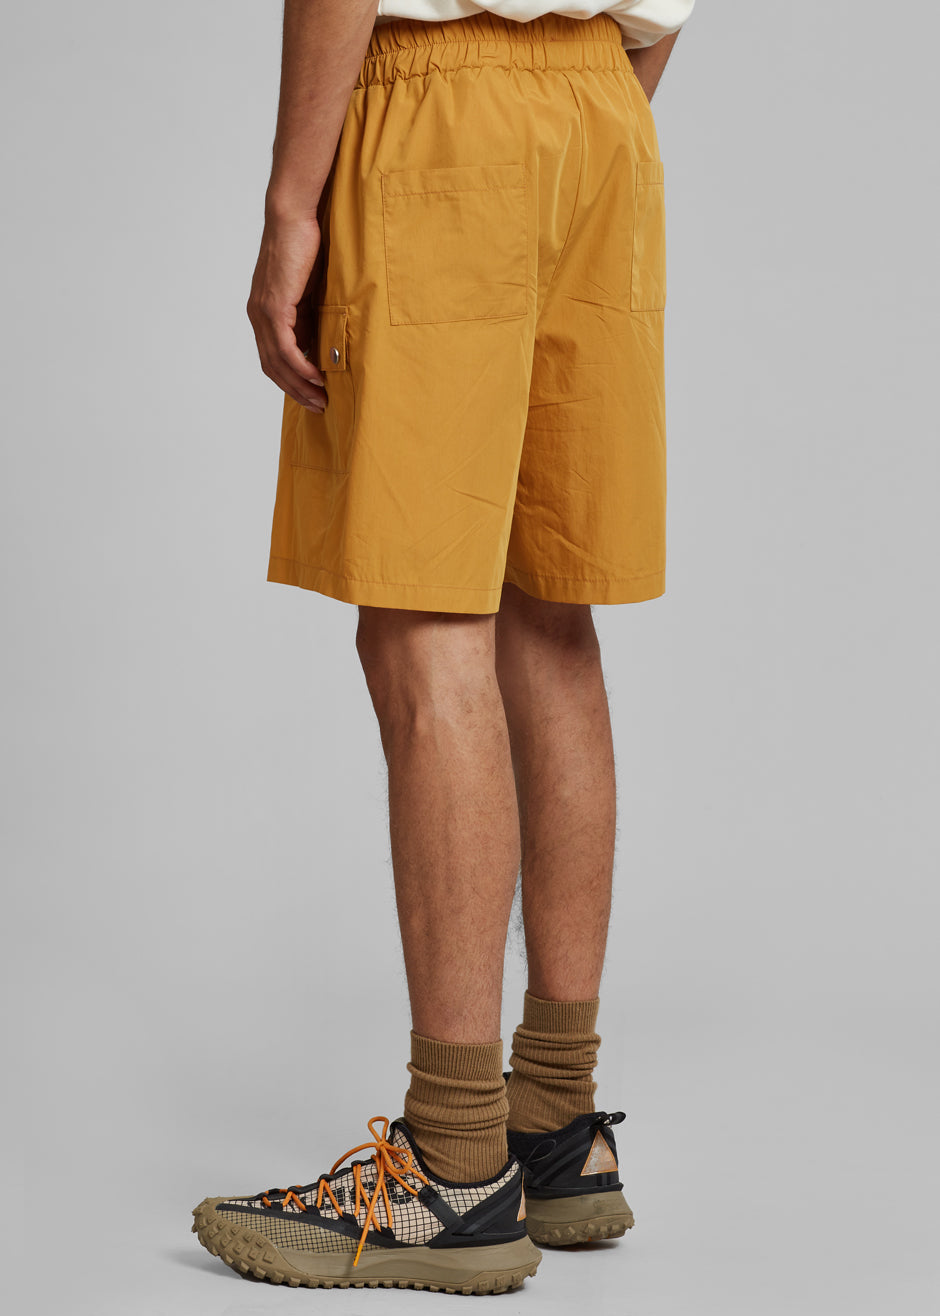 Spence Shorts - Orange - 7